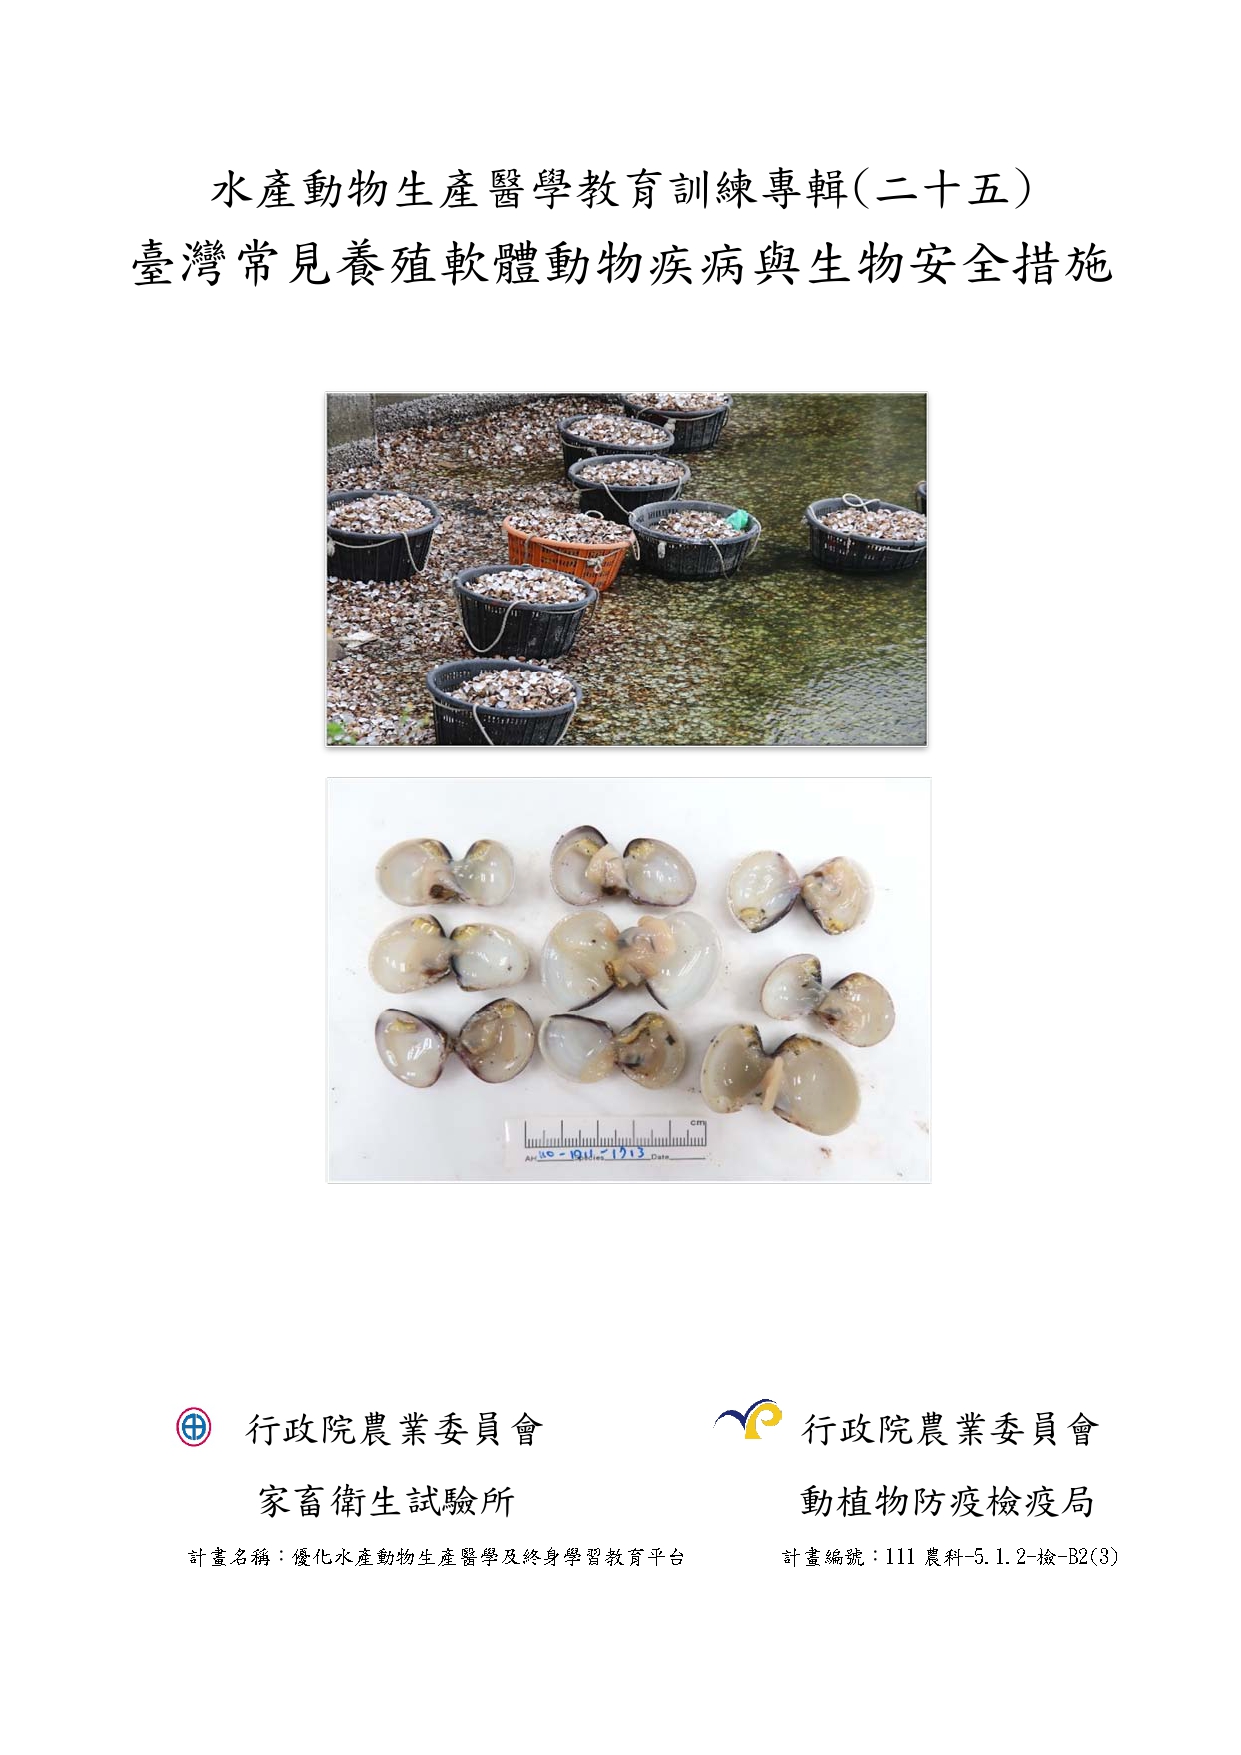 水產動物生產醫學教育訓練專輯(二十五) 臺灣常見養殖軟體動物疾病與生物安全措施